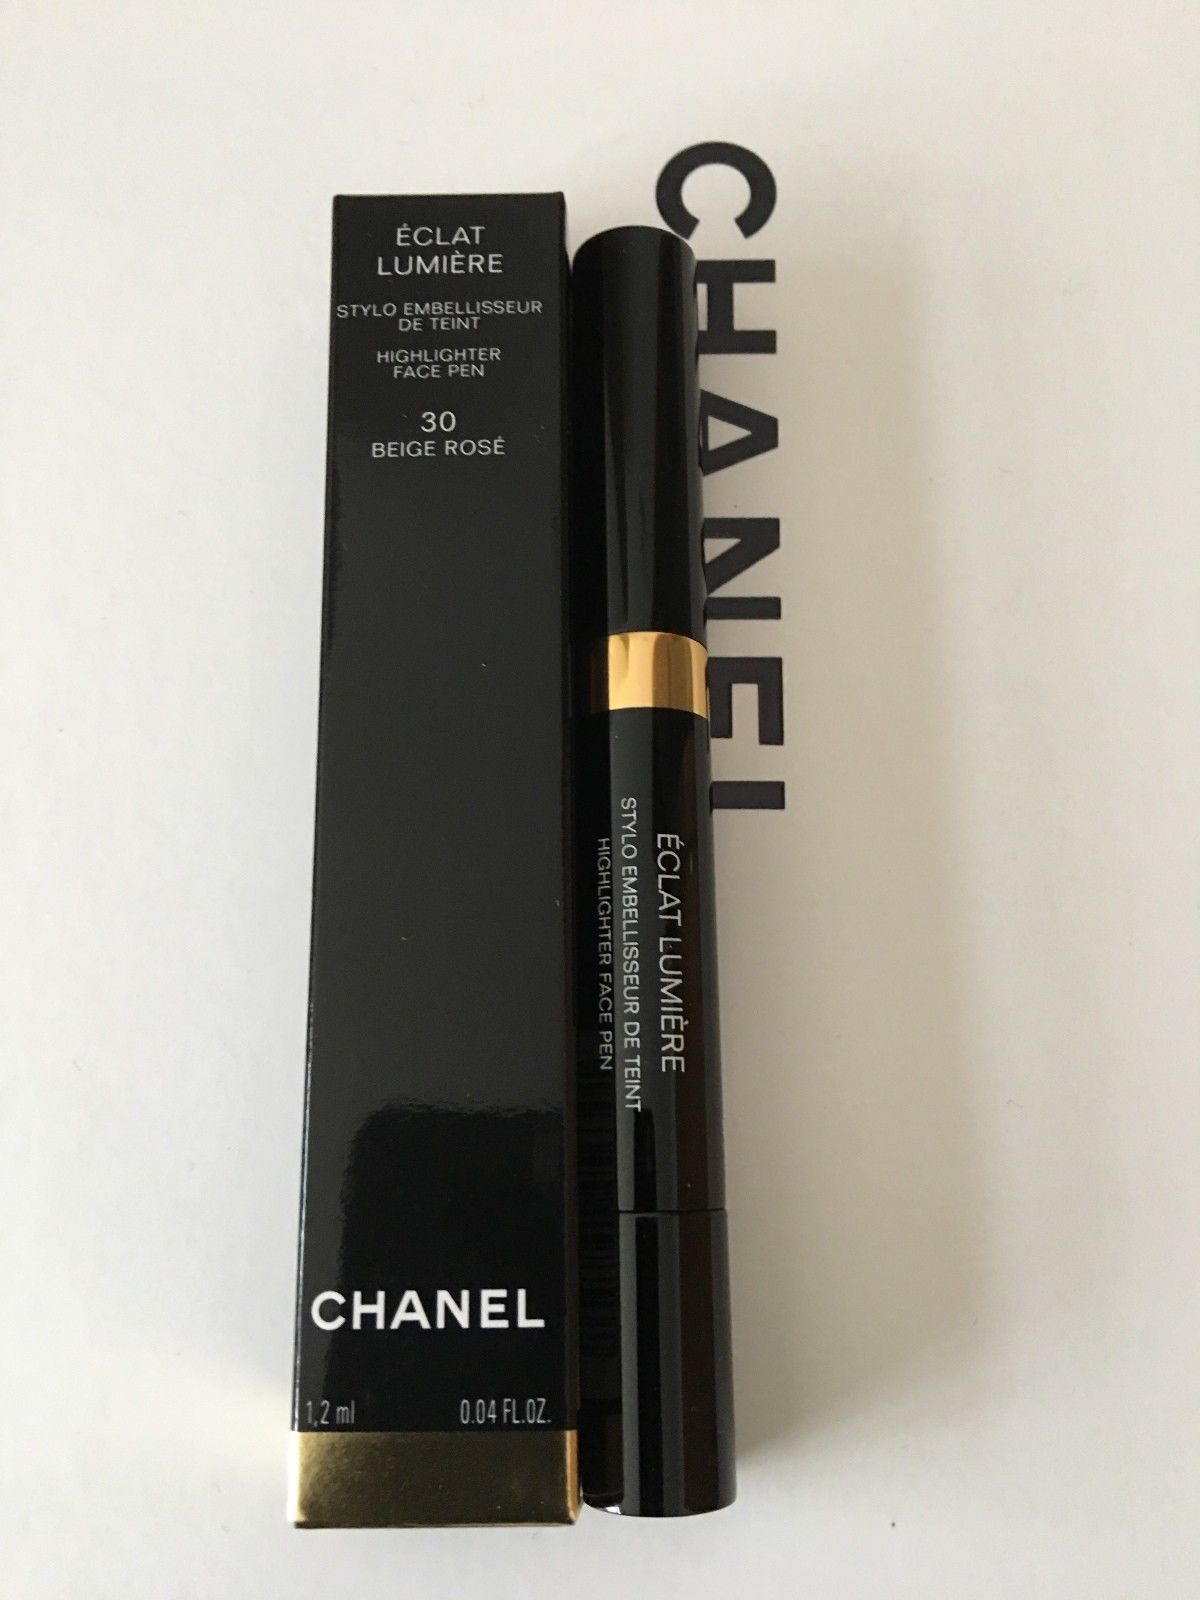 Kem lót CHANEL Le Blanc De Chanel MultiUse Illuminating Base chính hãng  giá rẻ